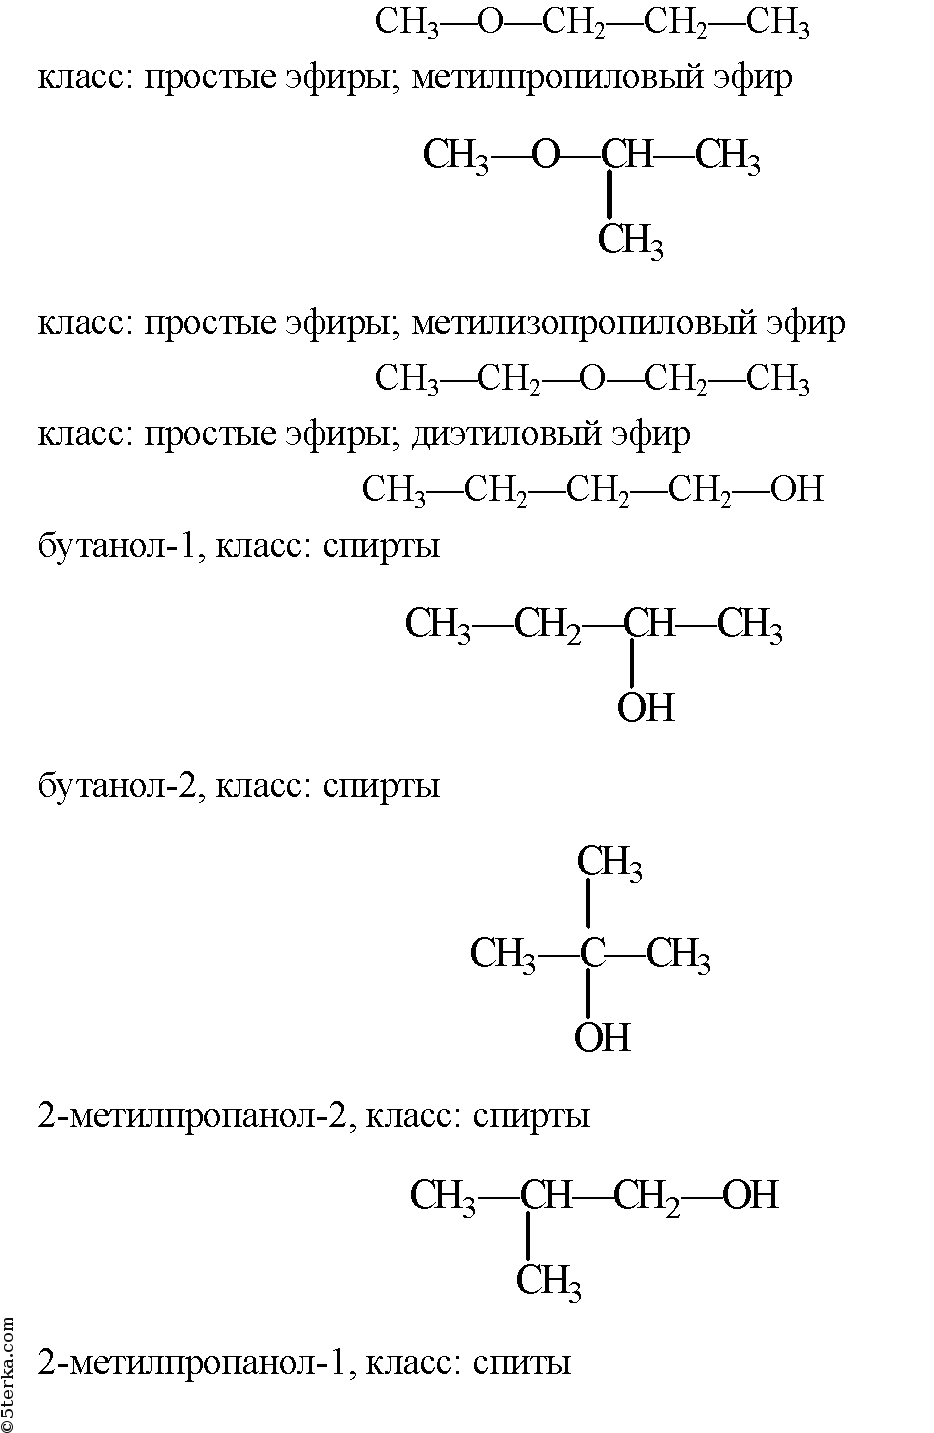 Ц 6 аш 12 о 6. Структурные формулы изомеров состава c3h8o. Формулы структурных изомеров с5h12о. Структурные формулы состава c5h10o. Структурные изомеры с4h10o.